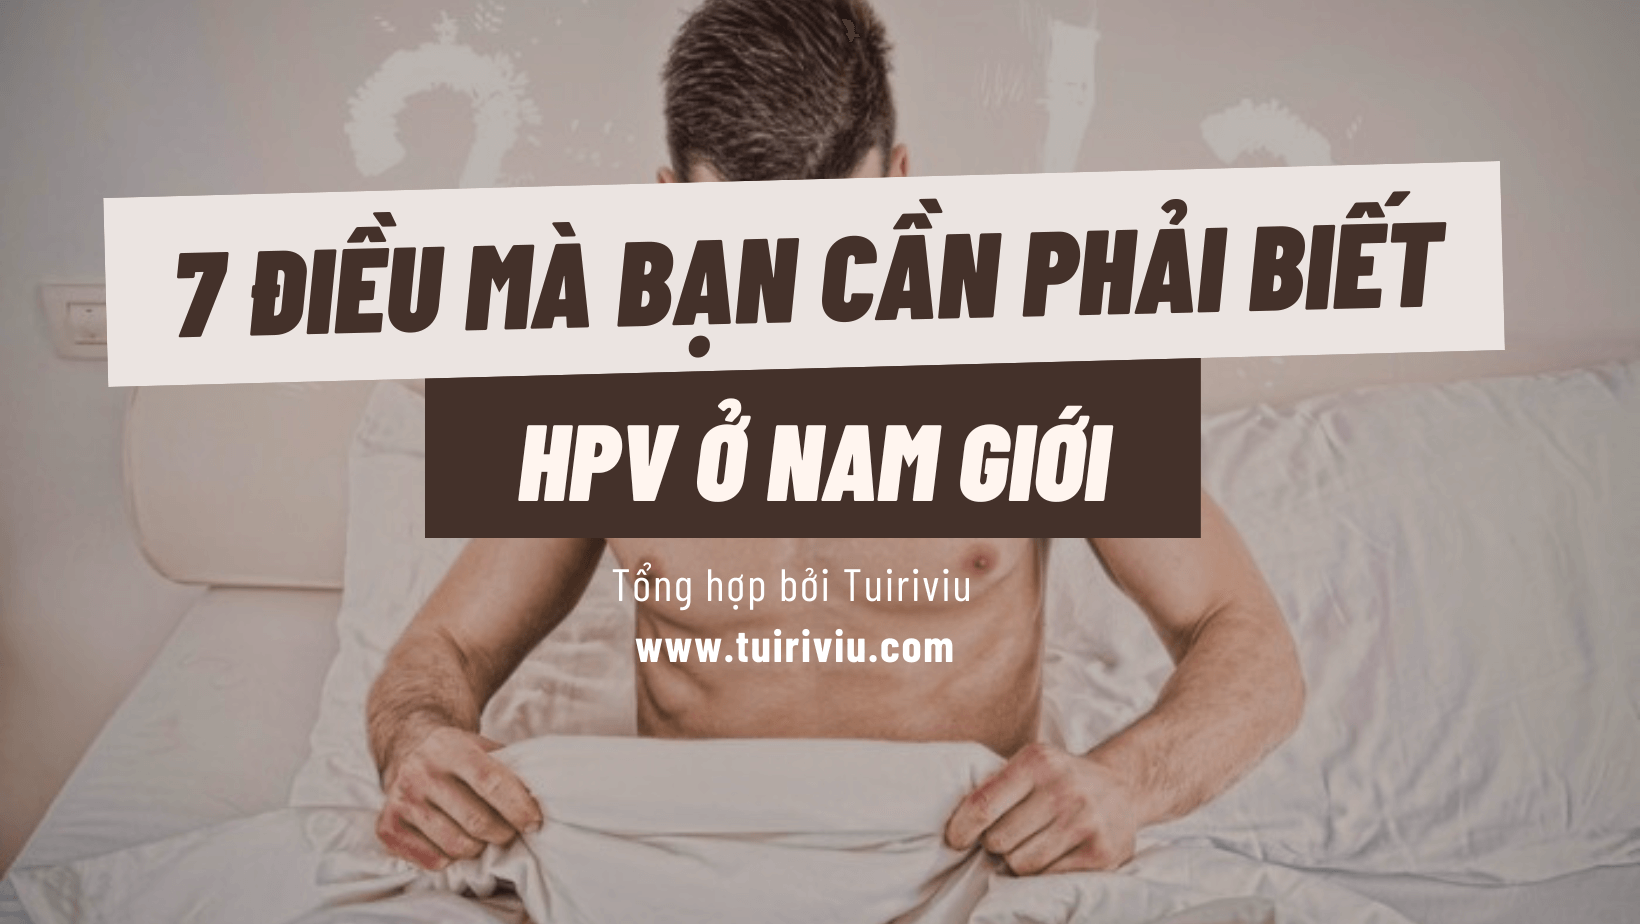 HPV ở nam giới tuiriviu